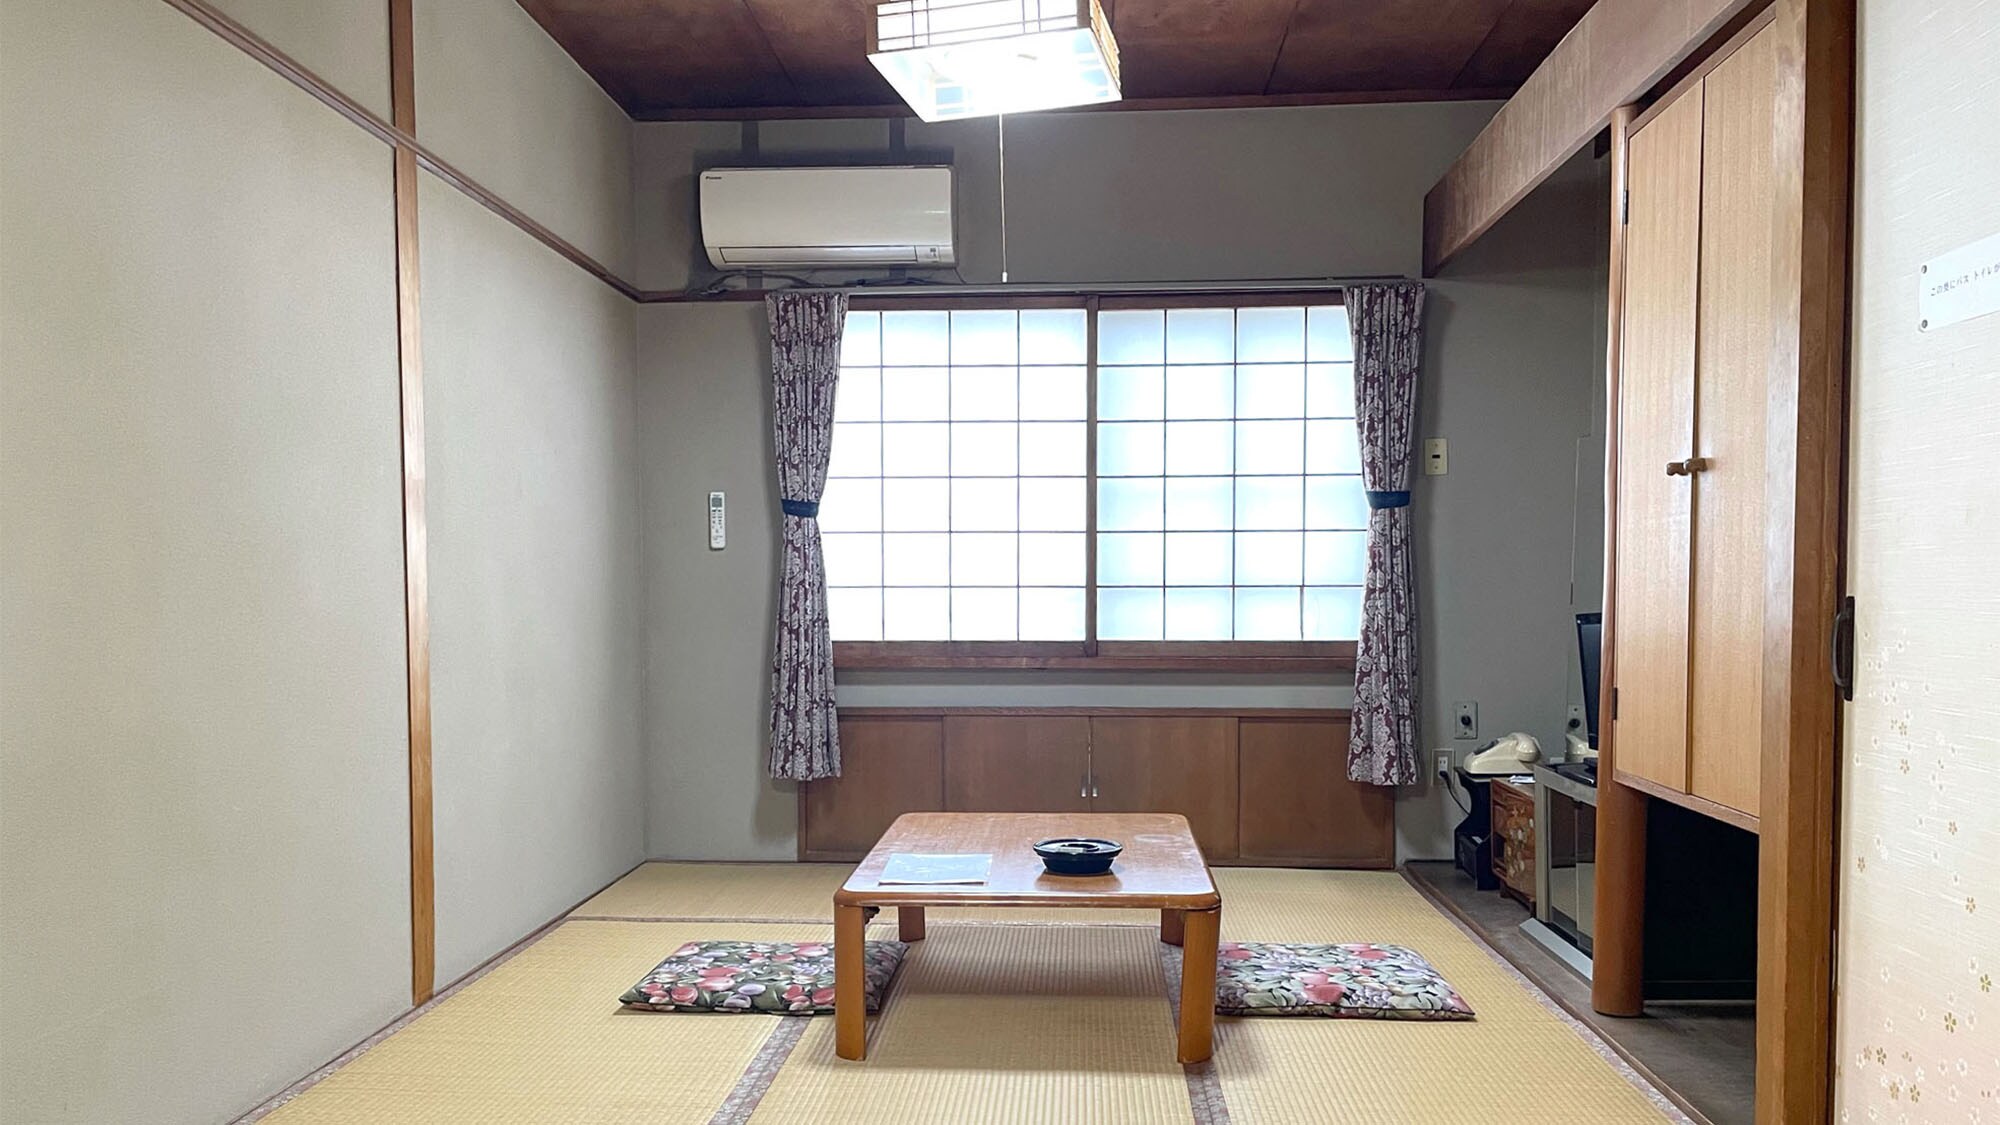 ・ [ตัวอย่างห้องพัก] ห้องสไตล์ญี่ปุ่น 9 เสื่อทาทามิ